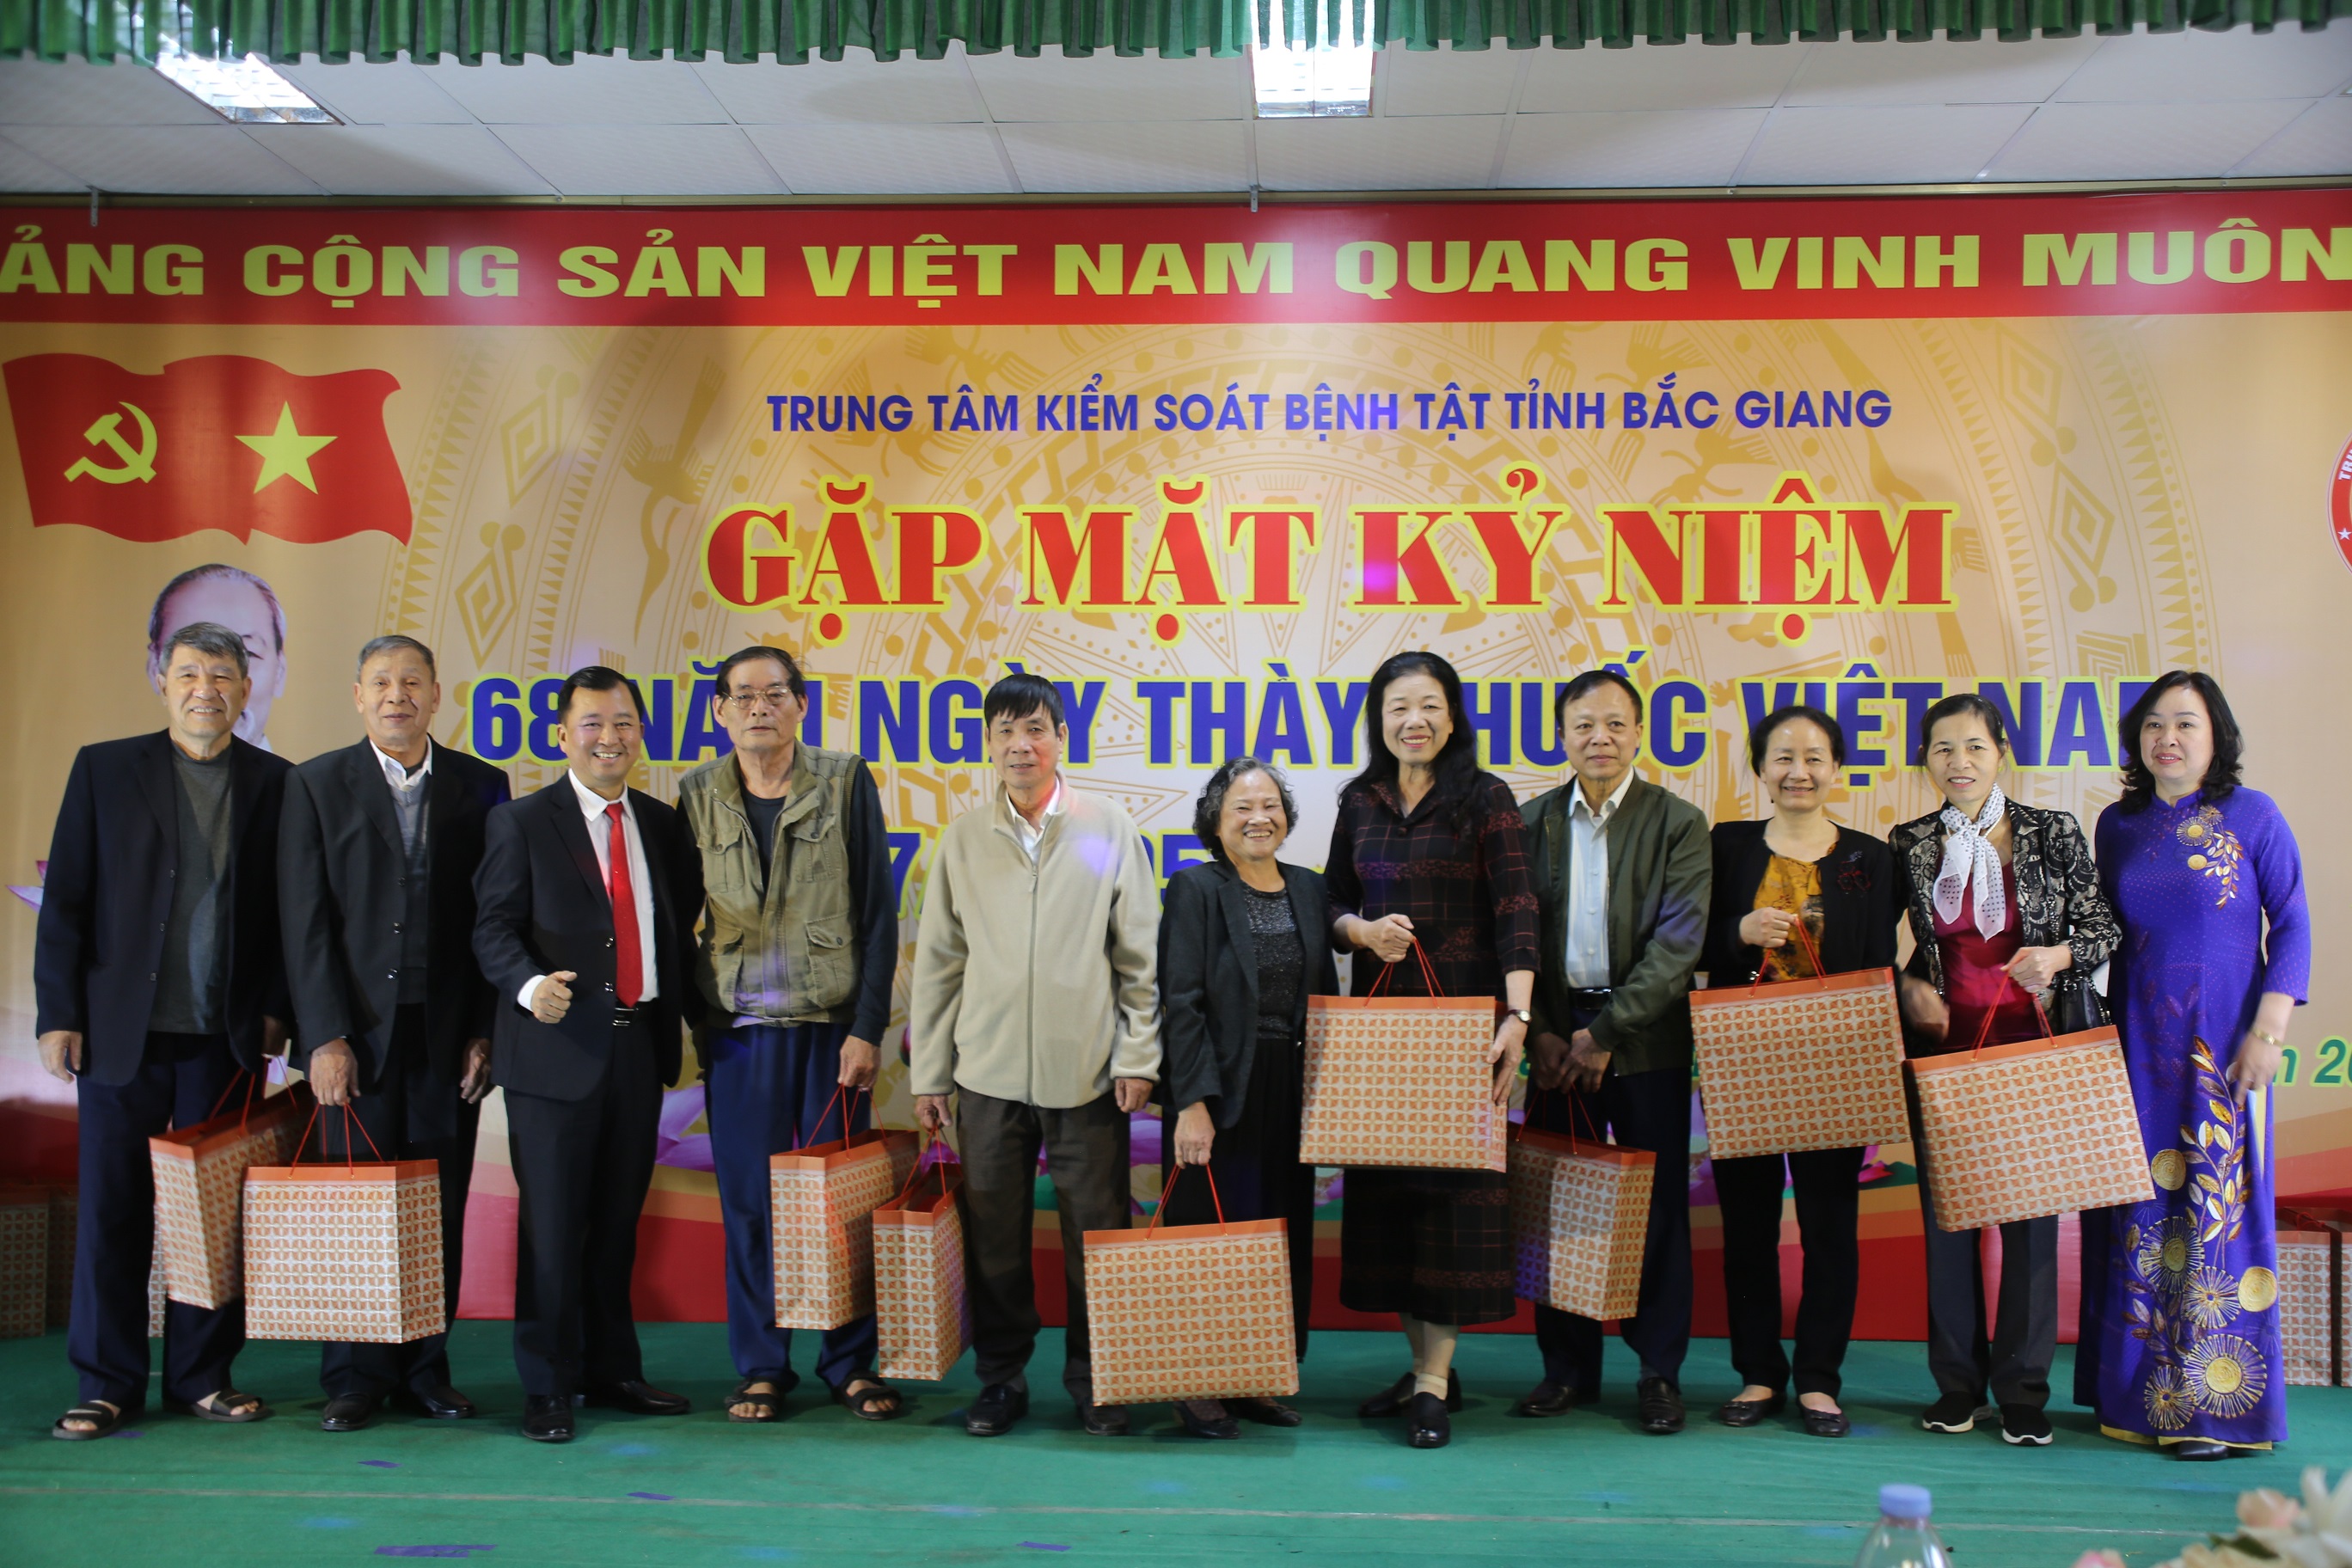 Trung tâm Kiểm soát bệnh tật Bắc Giang: gặp mặt kỉ niệm Ngày Thầy thuốc Việt Nam